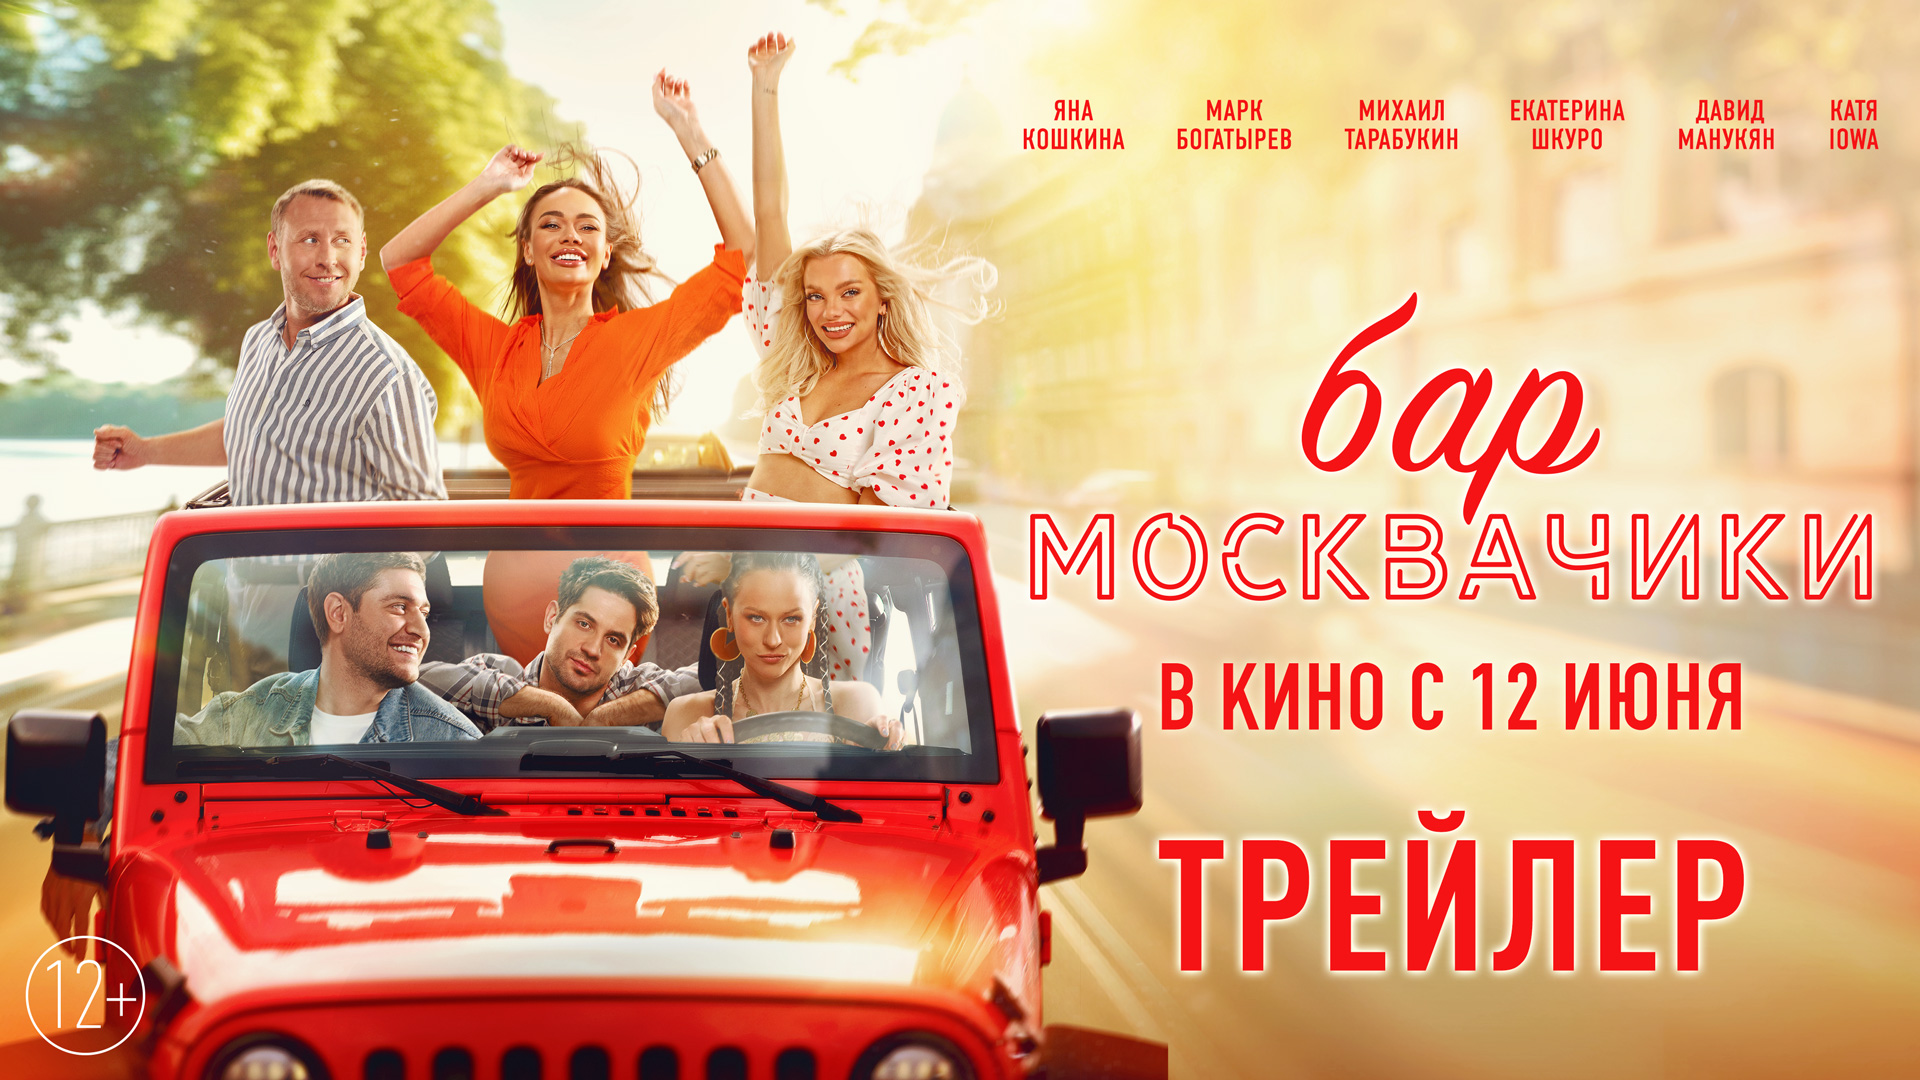 Бар МоскваЧики | Трейлер | В кино с 12 июня